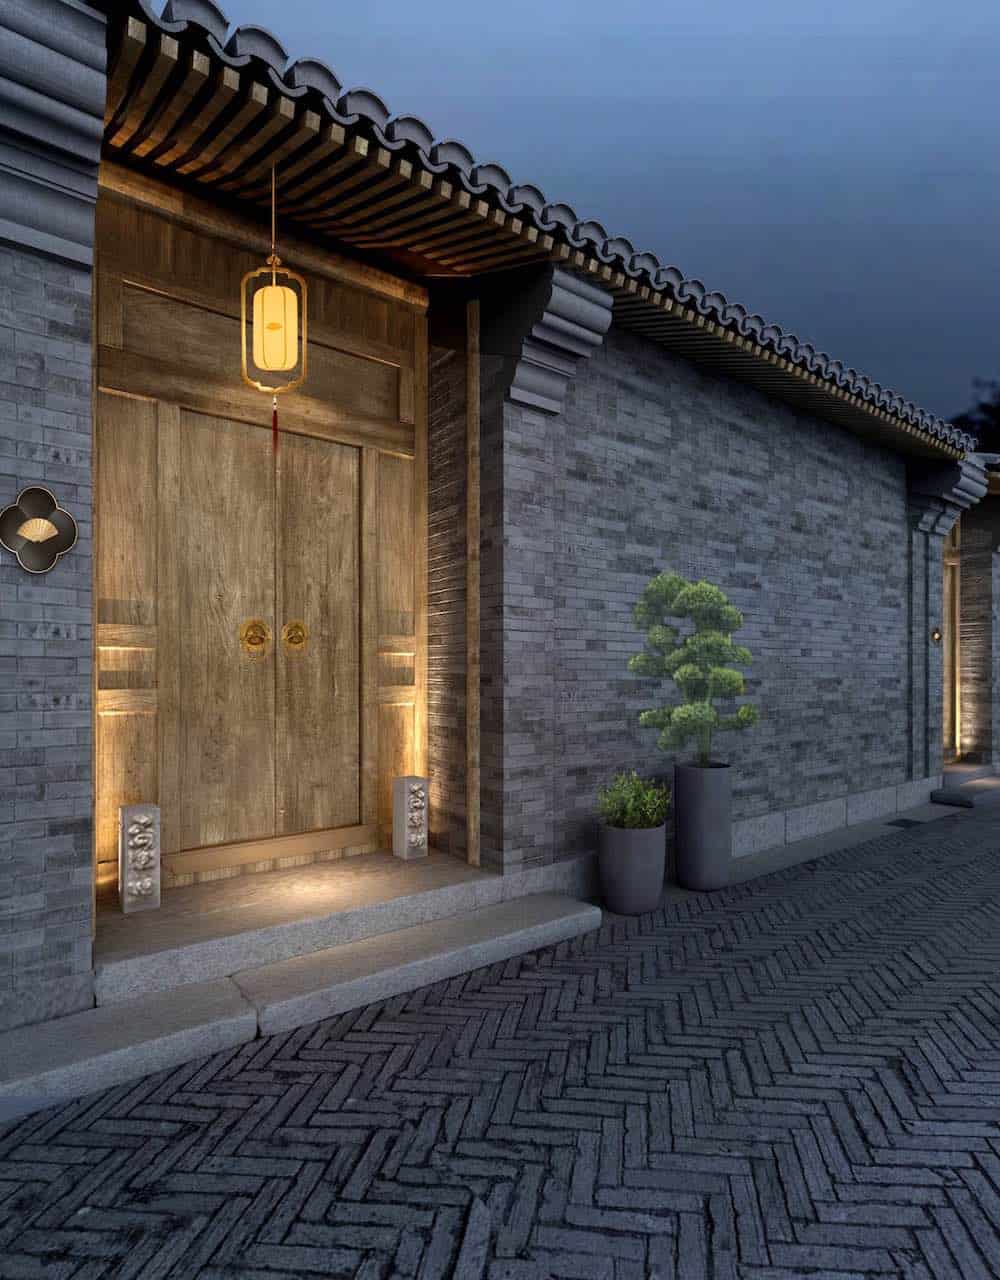 Mandarin Oriental anuncia un hotel de lujo en Pekín